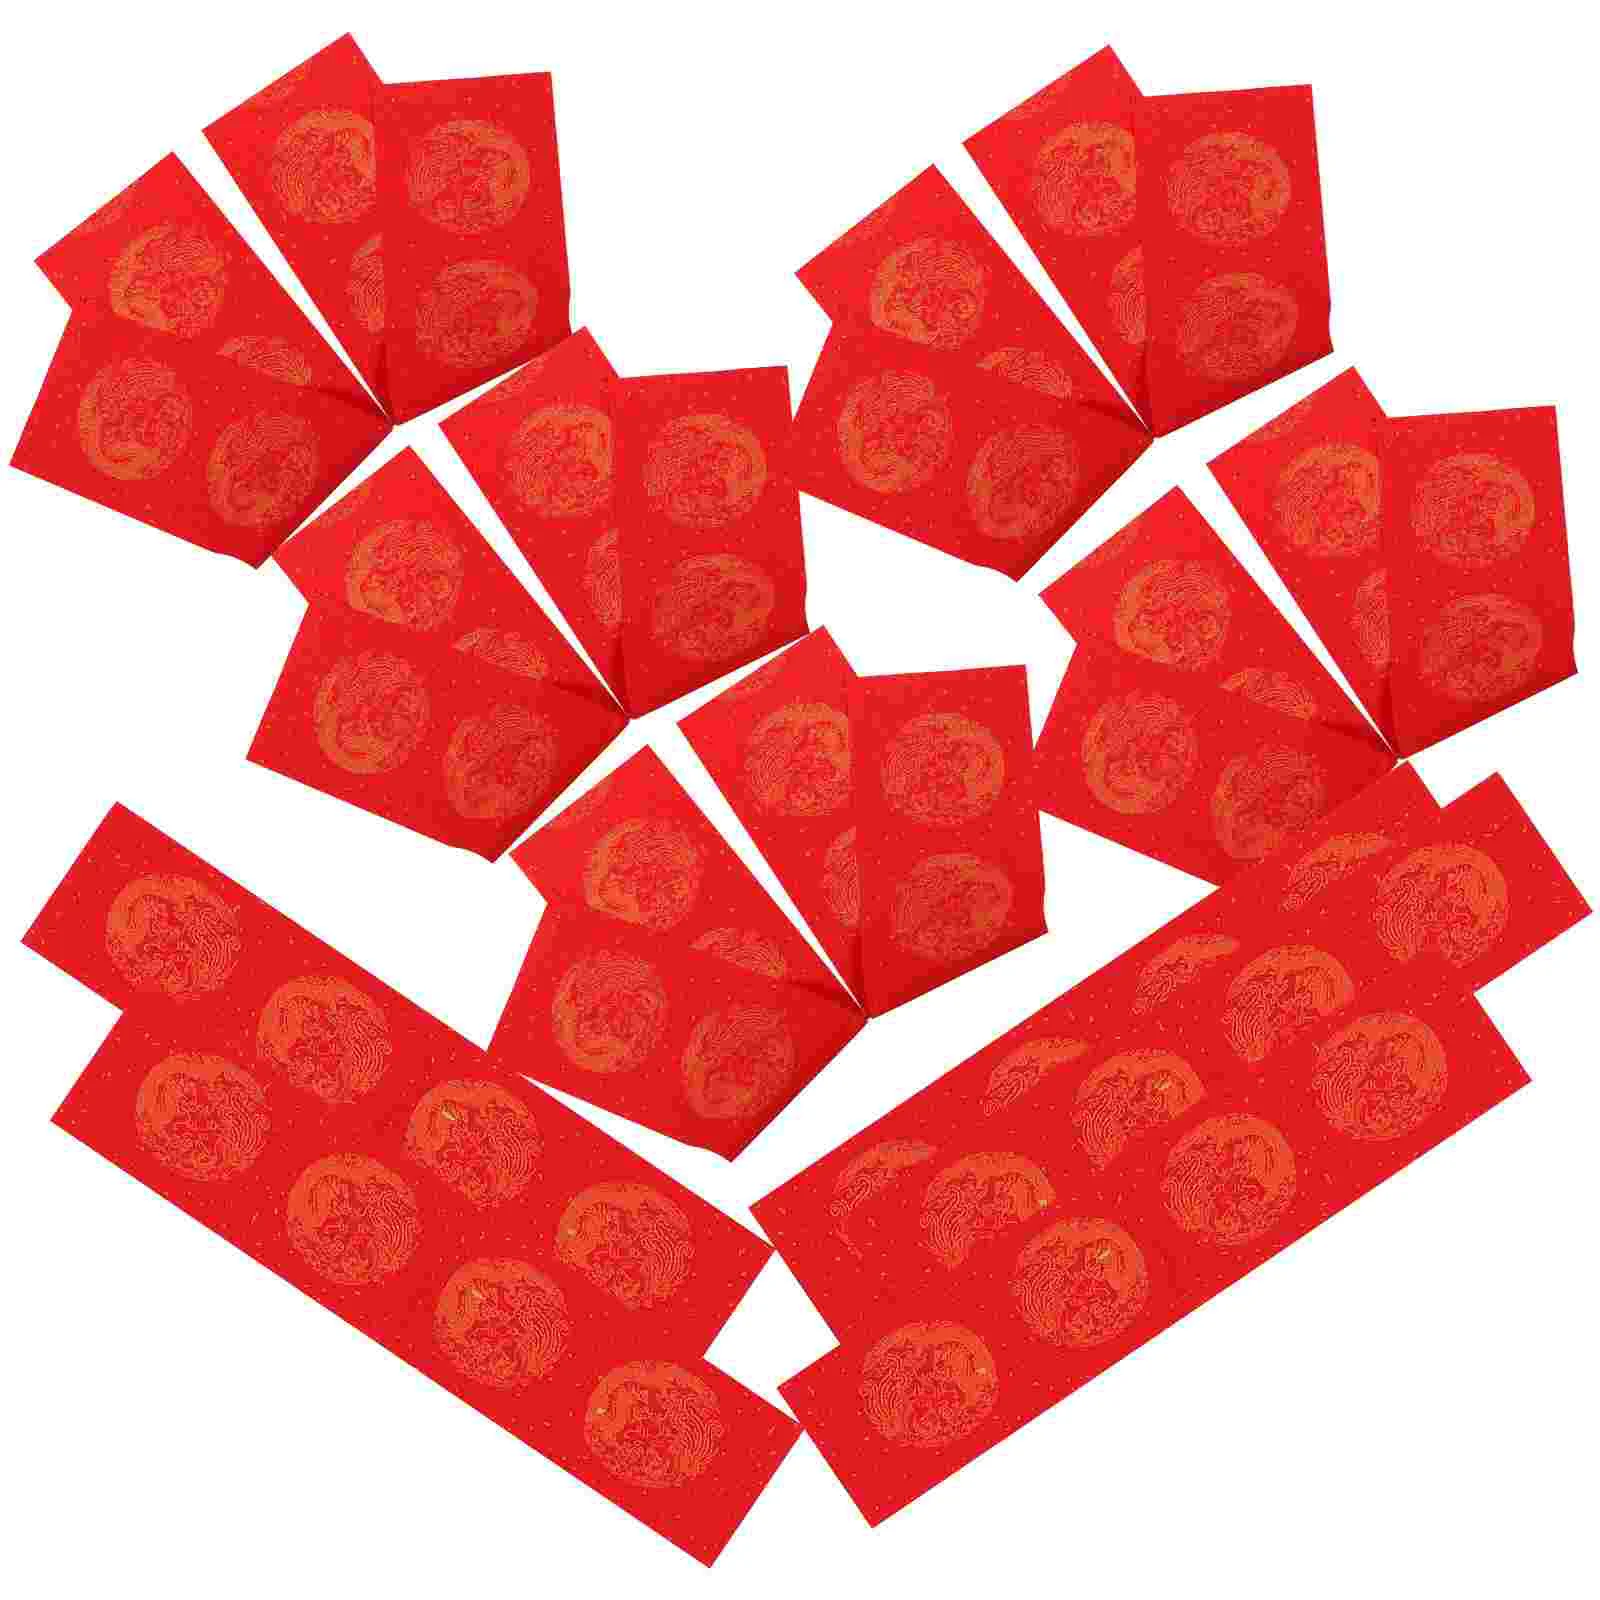 

Бумага для письма на праздник весны, 5 комплектов, красная бумага для китайской каллиграфии, красная бумага для дома